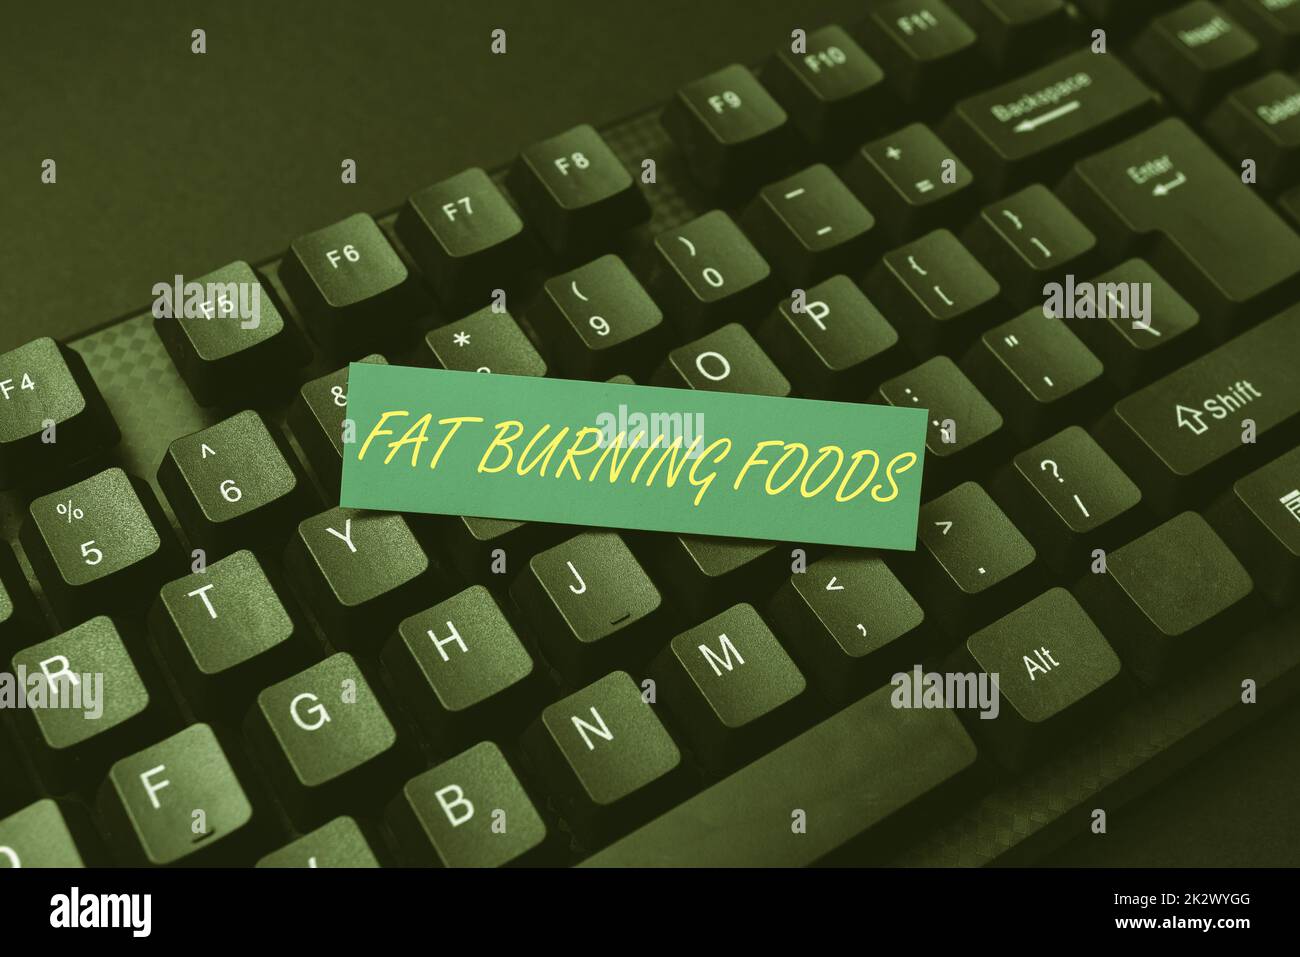 Textunterschrift präsentiert: Fat Burning Foods. Geschäftskonzept Fettabbau durch Stimulierung des Stoffwechsels zur Verringerung des Appetits Erstellen einer neuen Online-Blog-Website, Tippen sinnvoller Internetinhalte Stockfoto